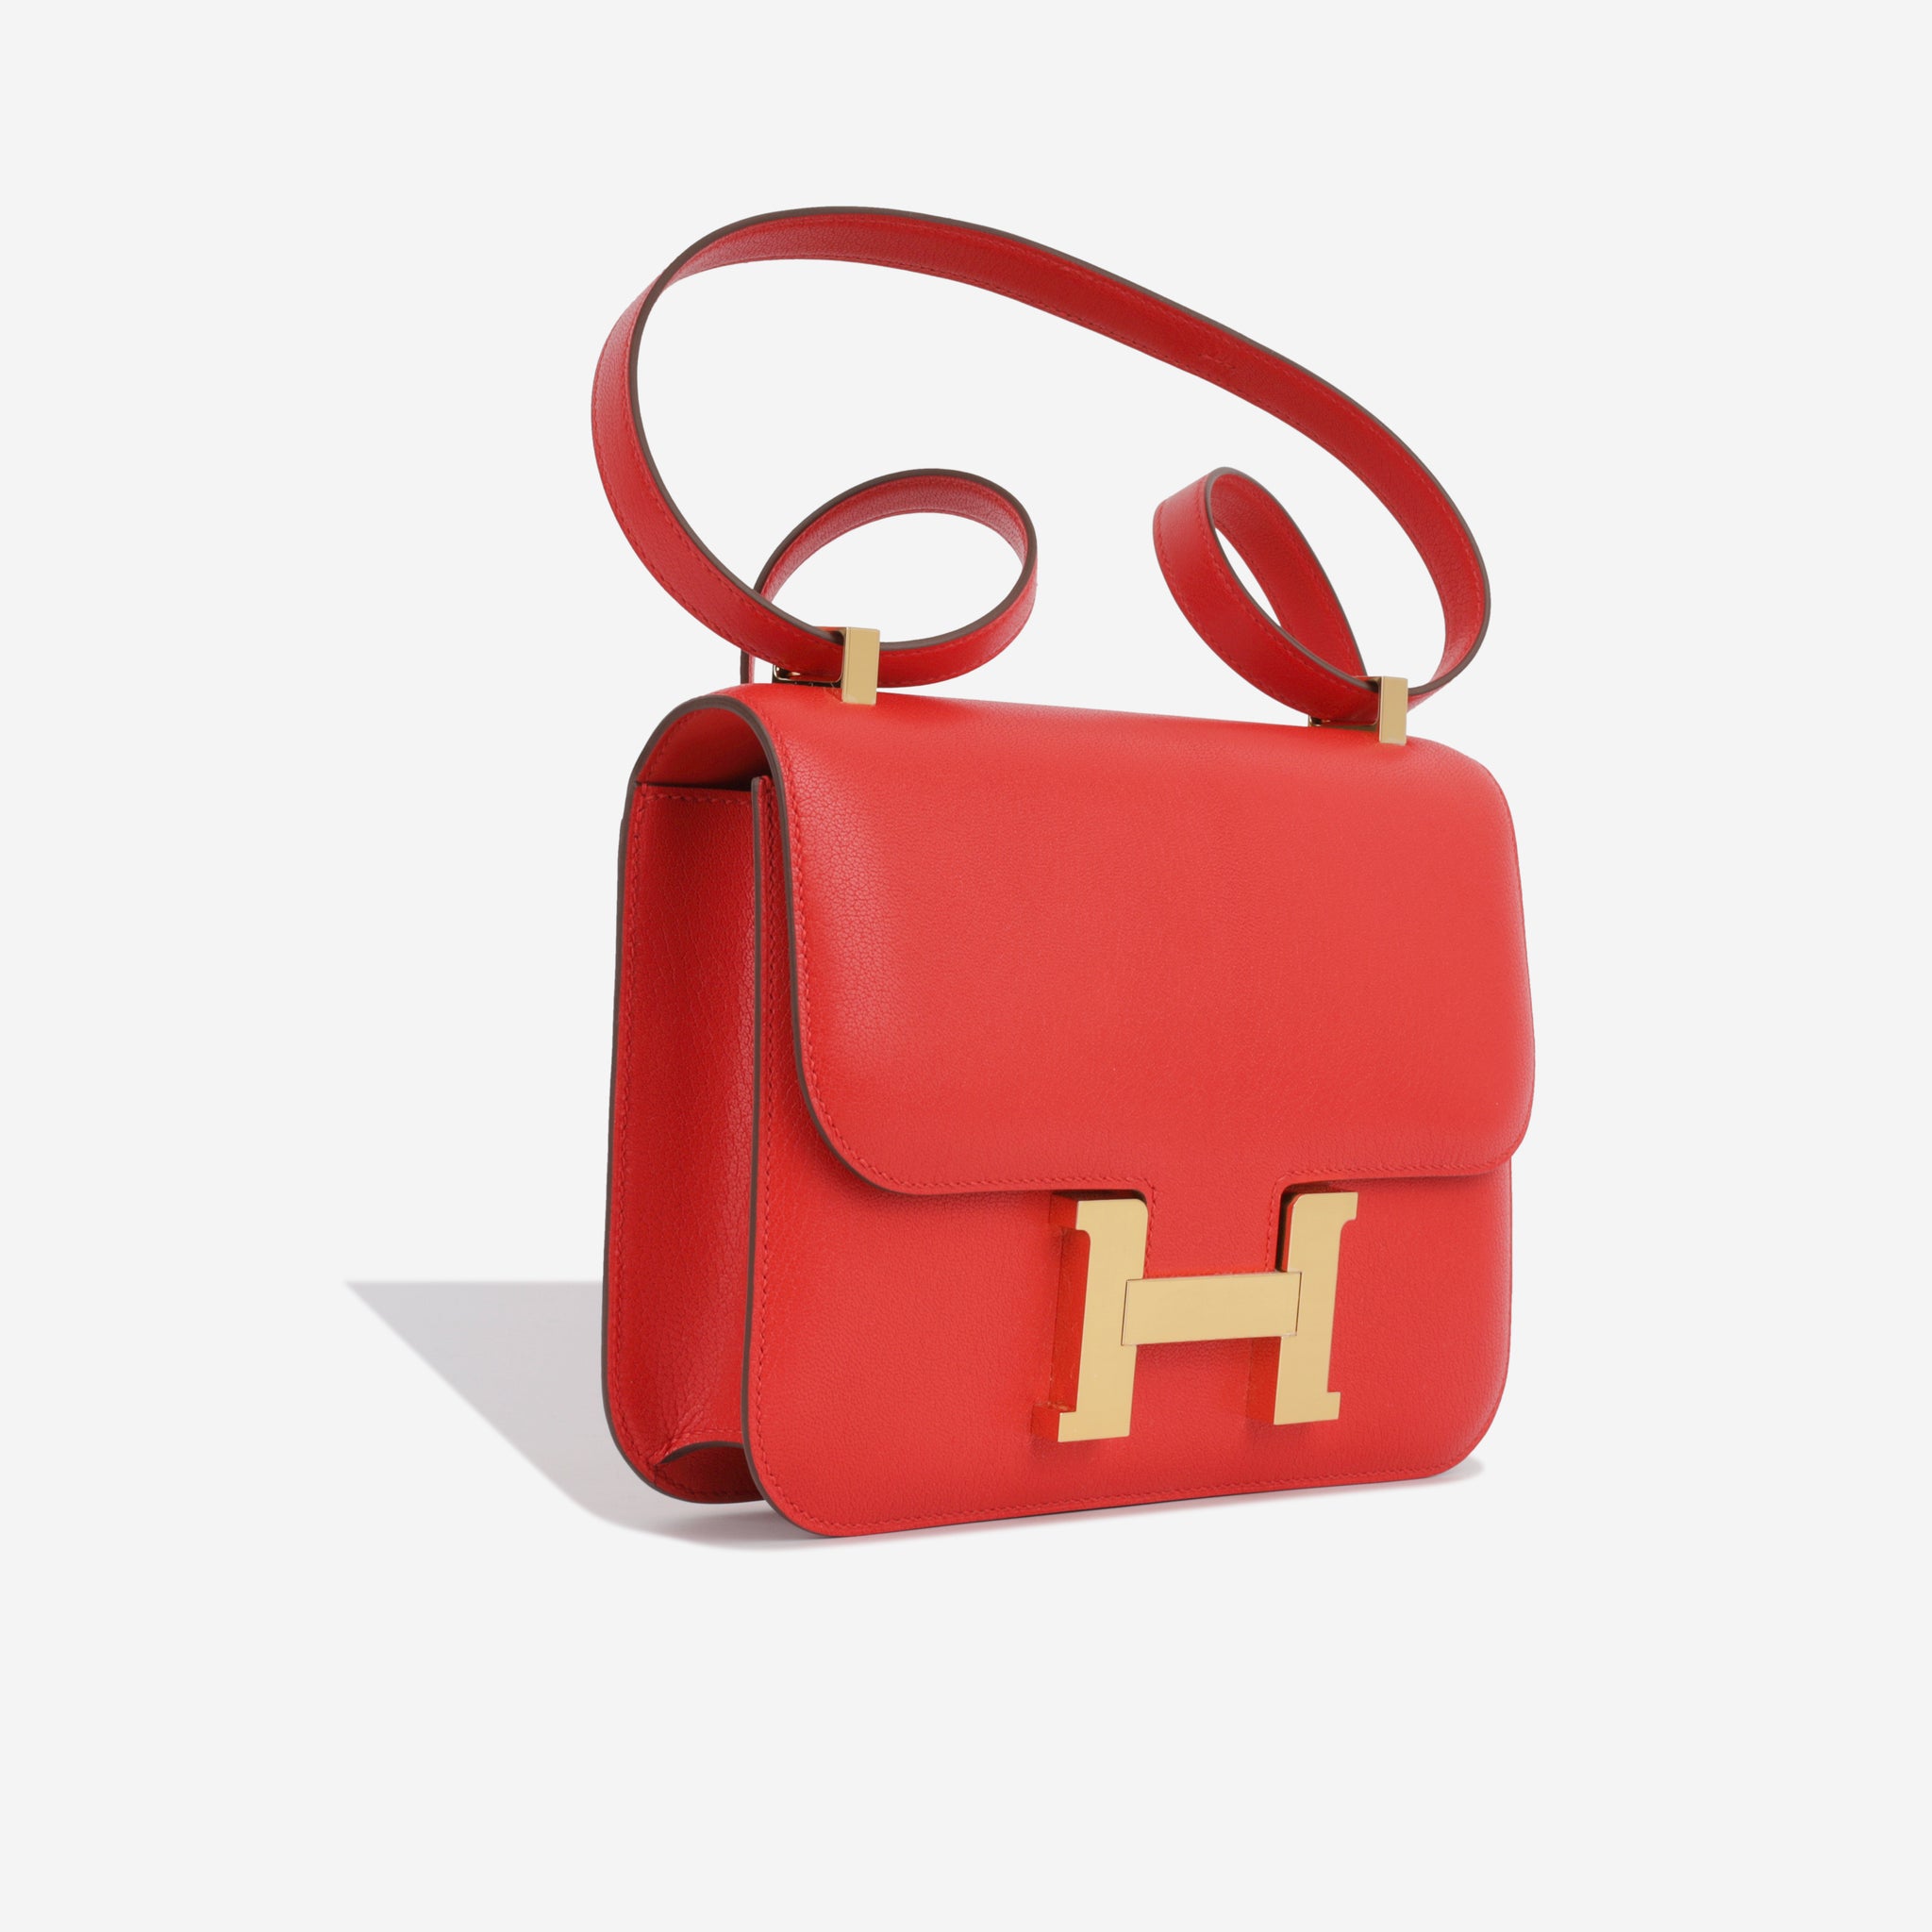 Hermès - Constance 24 - Rouge De Coeur Chèvre - GHW - Brand New